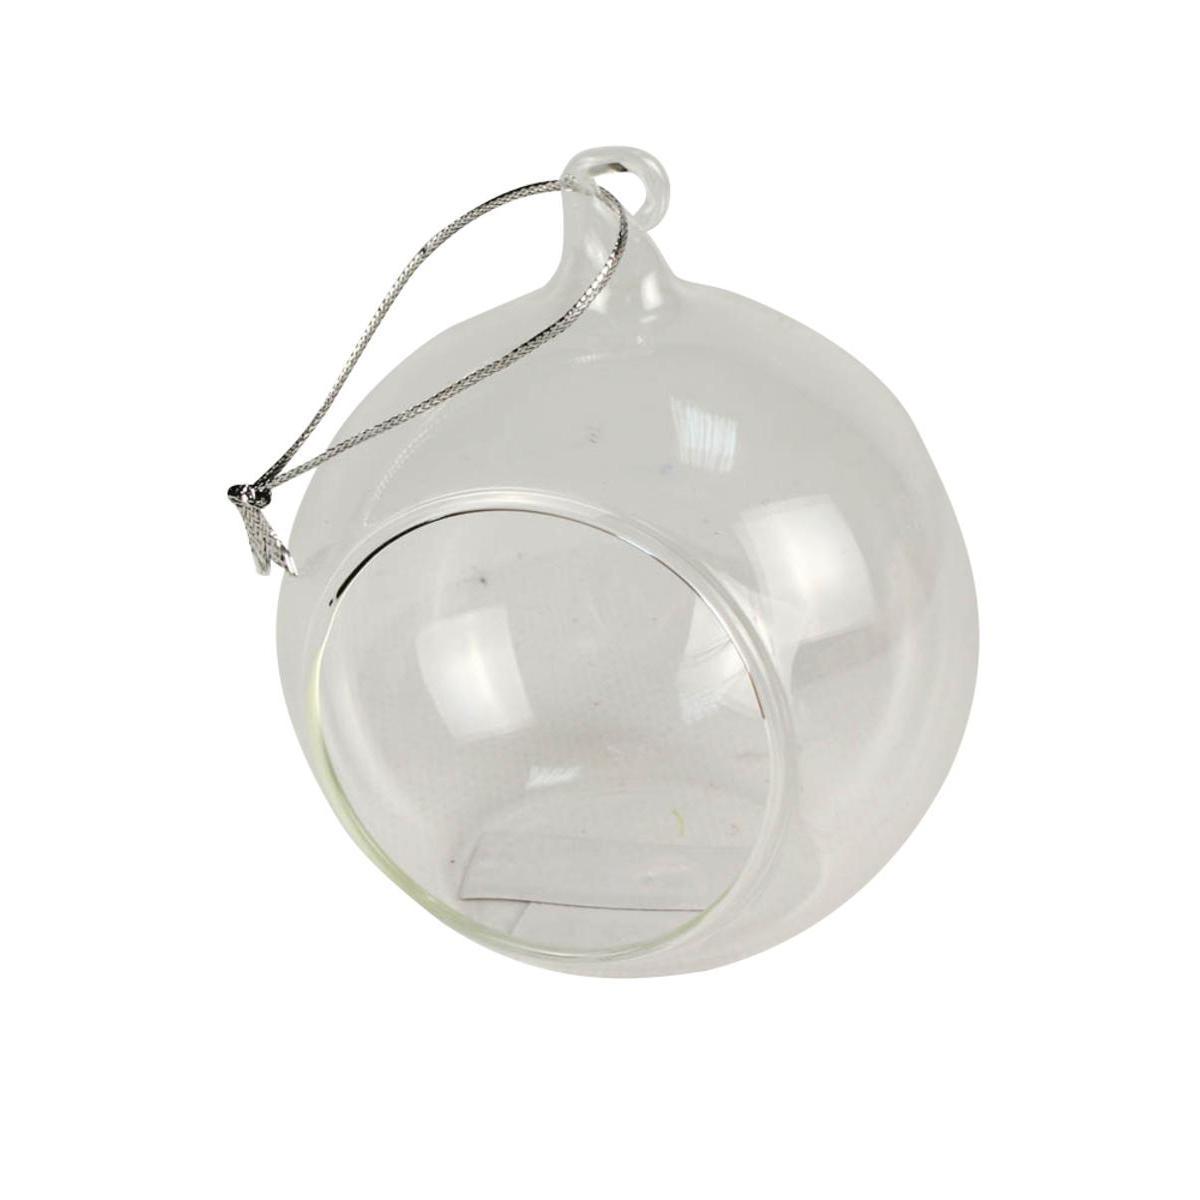 Boule ouverte à suspendre - Verre - Diamètre 8 cm - Blanc